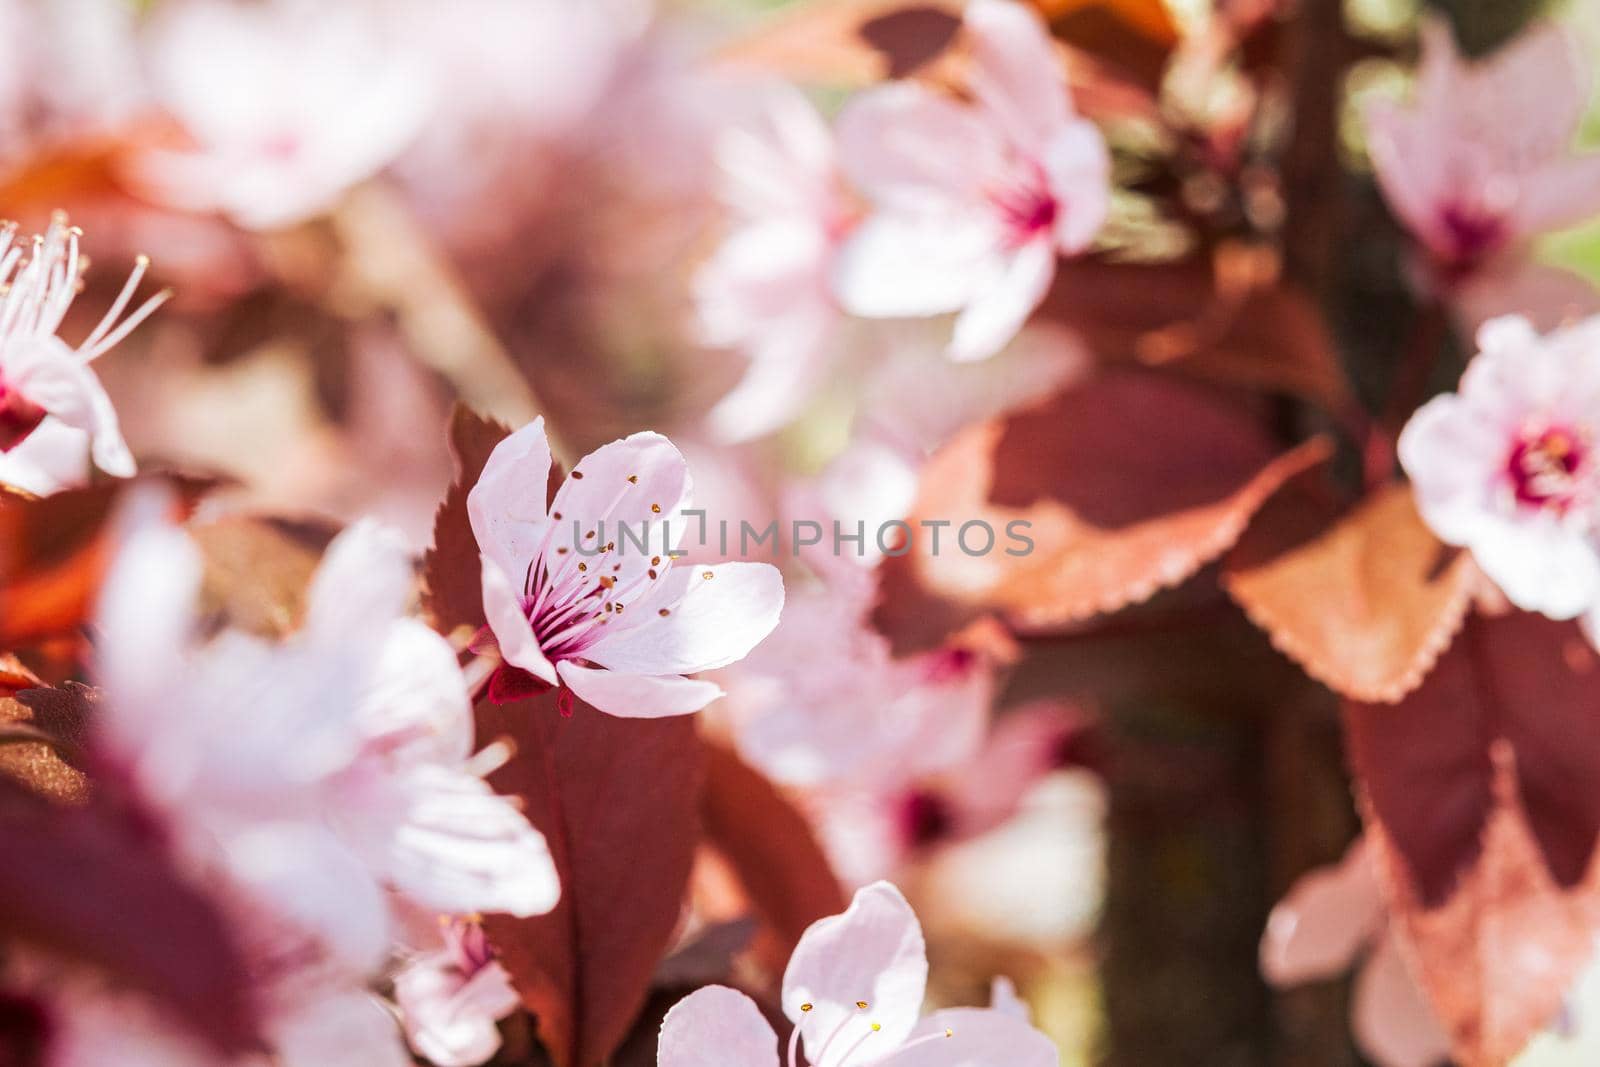 Plum fruit pink flowers in bloom on tree branch, spring season, selective focus.